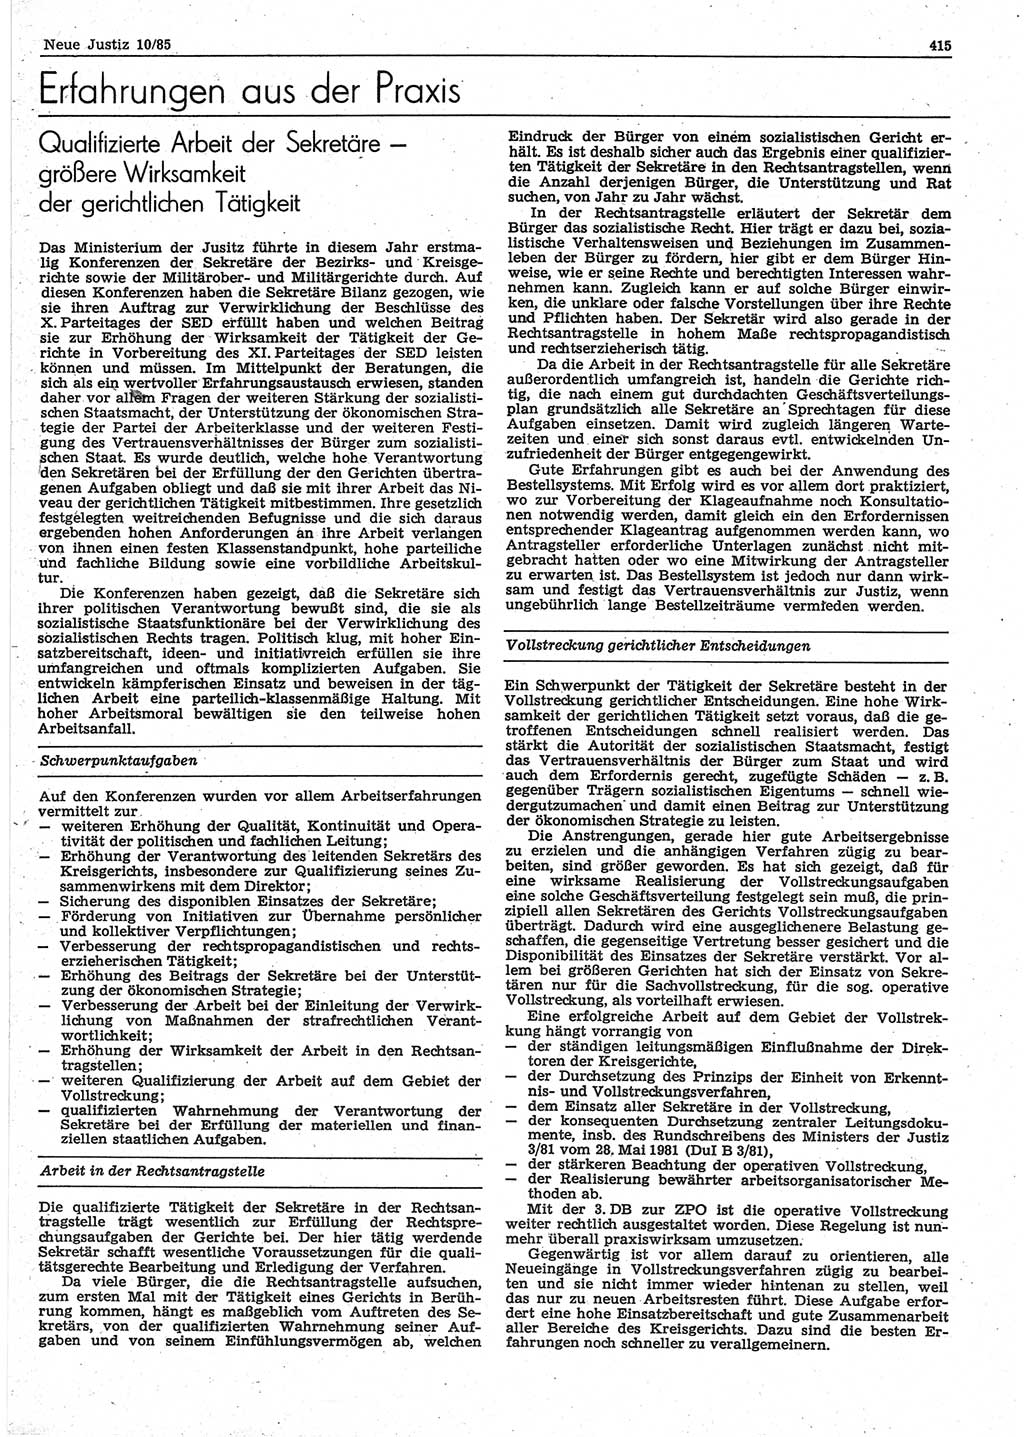 Neue Justiz (NJ), Zeitschrift für sozialistisches Recht und Gesetzlichkeit [Deutsche Demokratische Republik (DDR)], 39. Jahrgang 1985, Seite 415 (NJ DDR 1985, S. 415)